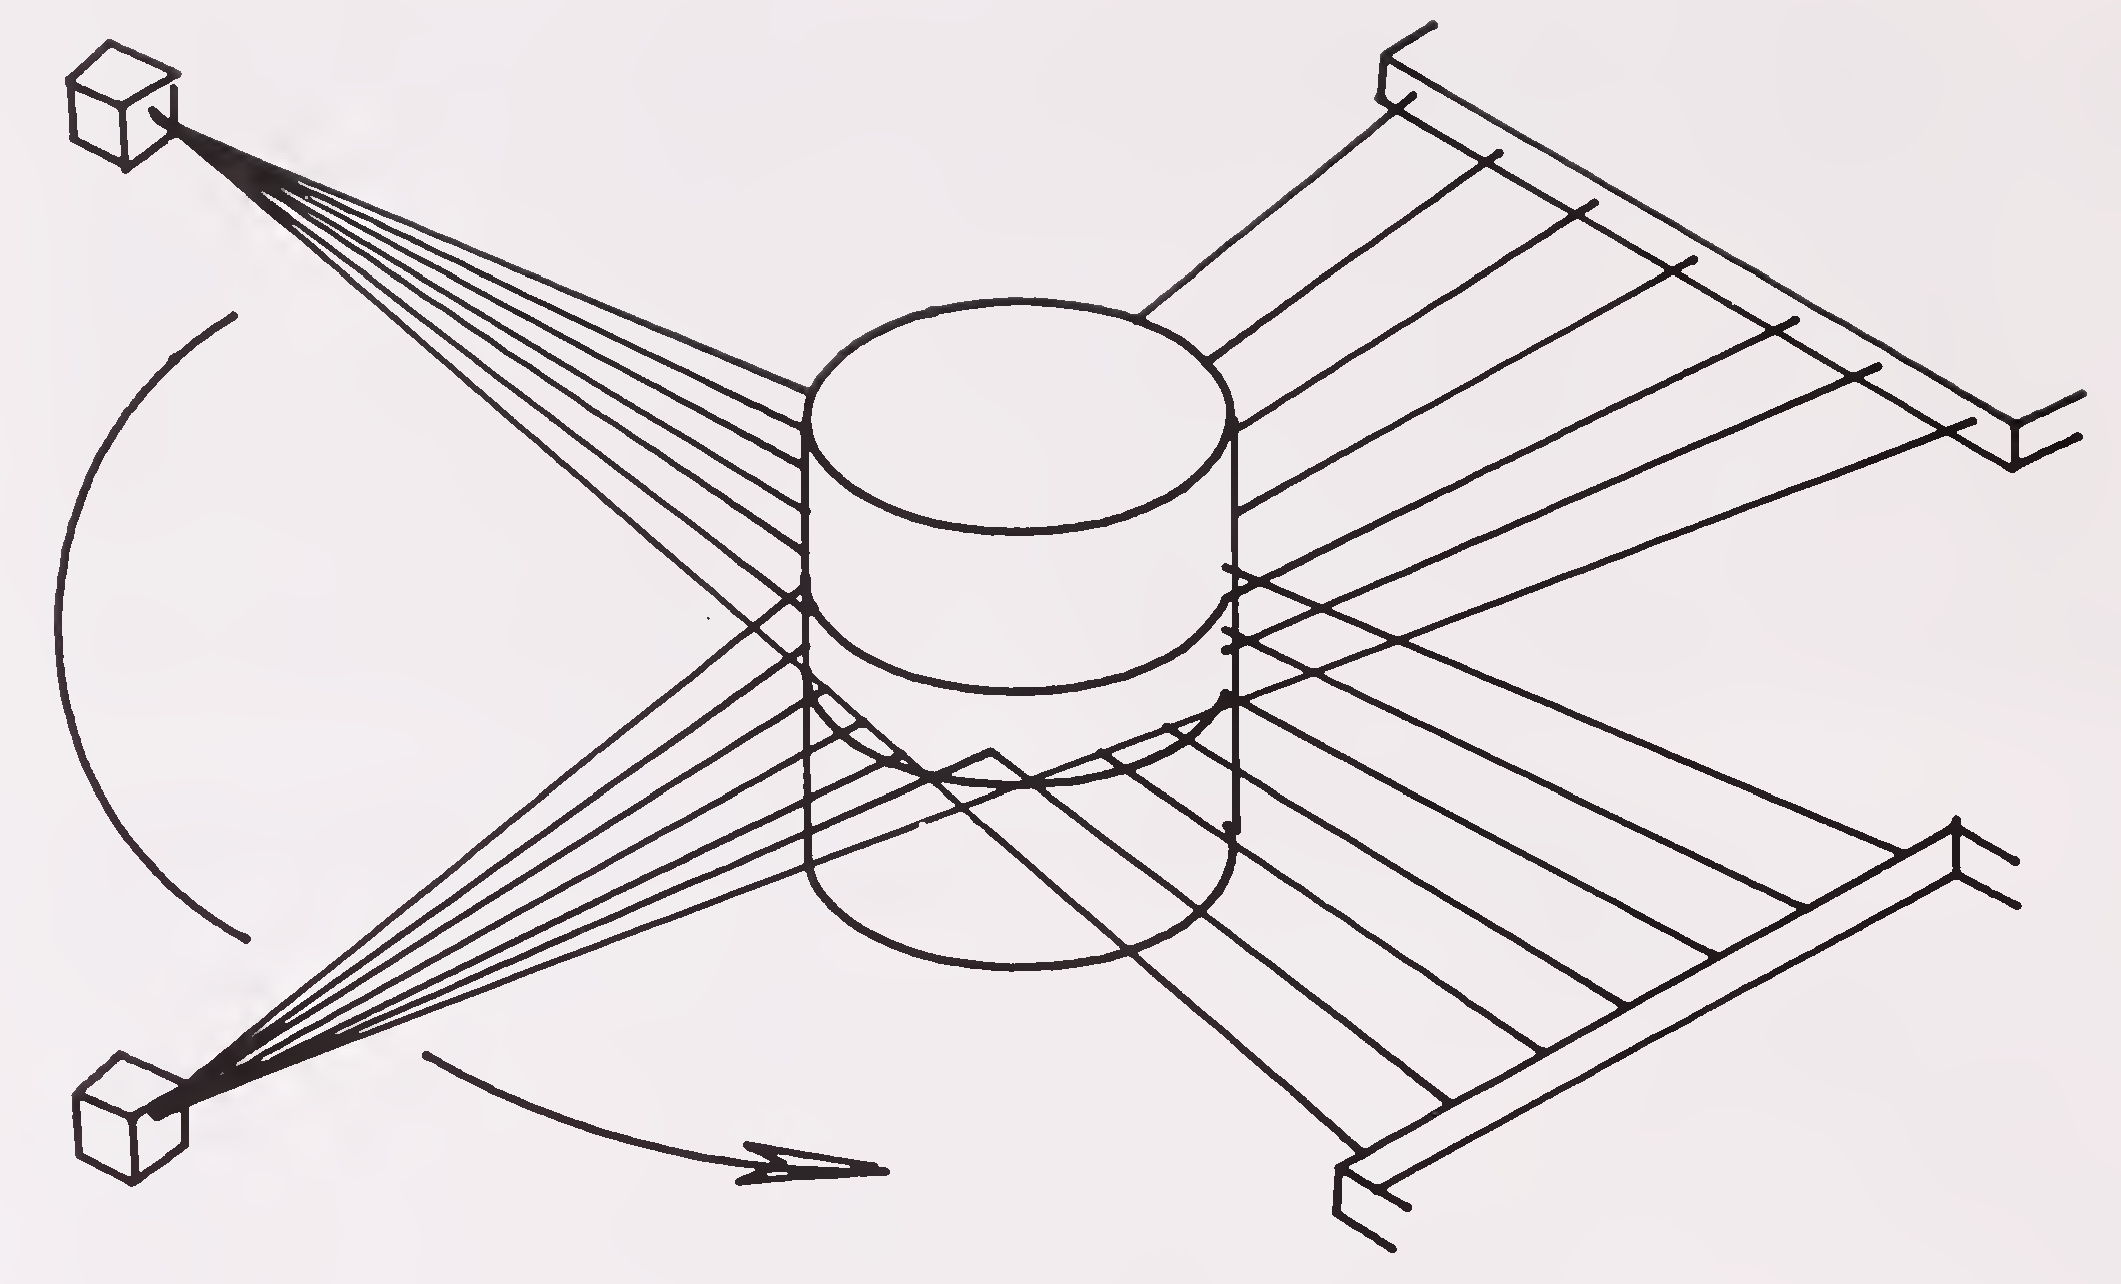 Fig.5.1 ಗಣಕೀಕೃತ ಟೊಮೊಗ್ರಫಿಗಾಗಿ ಸ್ಕ್ಯಾನಿಂಗ್ ವಿಧಾನ